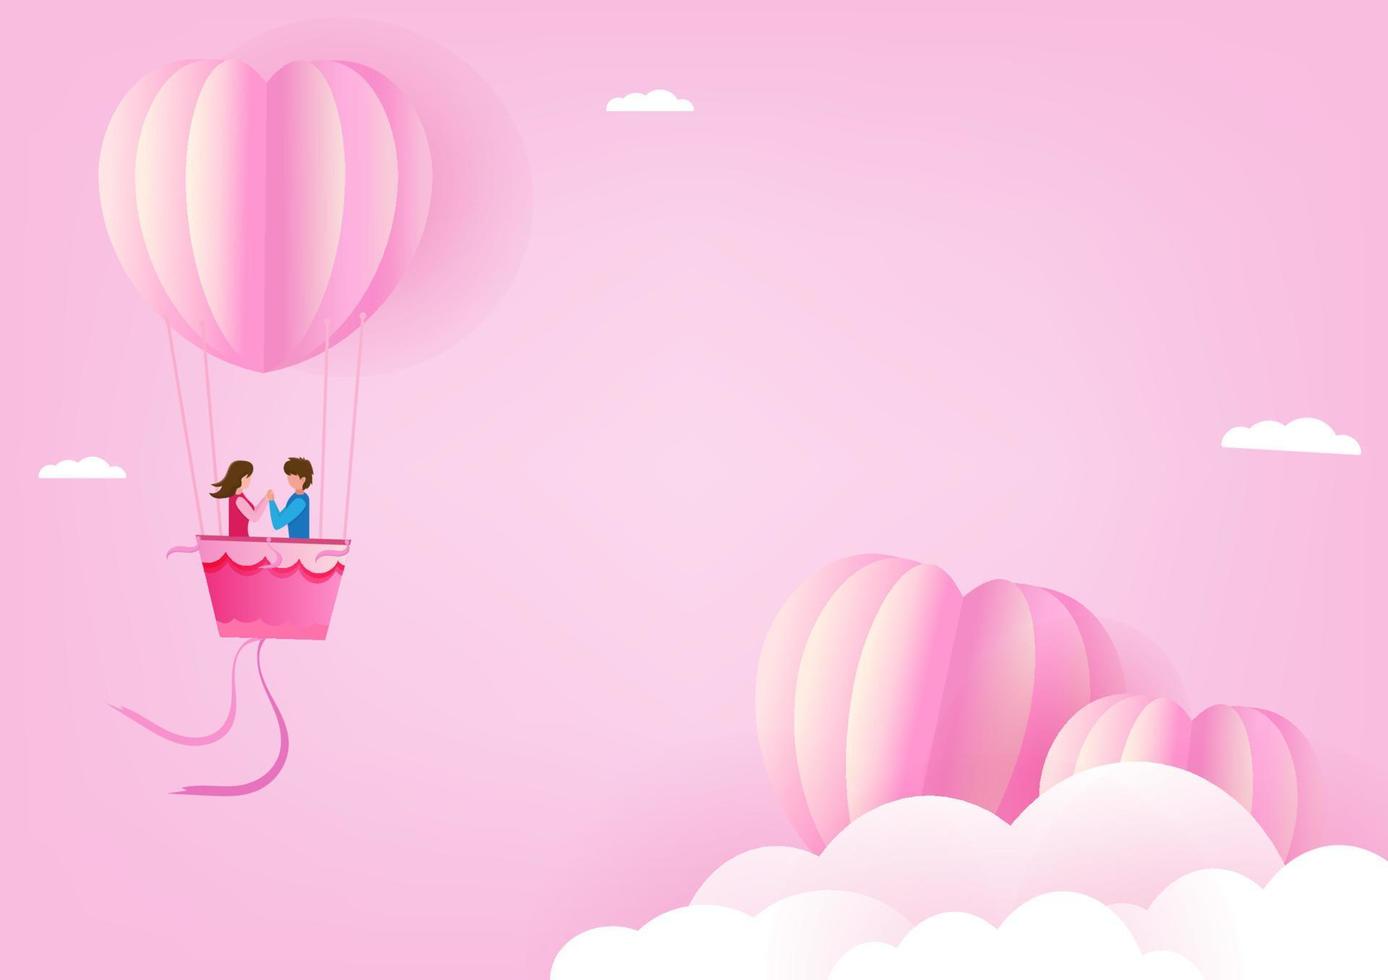 jong stel op Valentijnsdag romantische sfeer met hartballonnen die in de lucht zweven, verspreide kleine harten in papierkunststijl vector